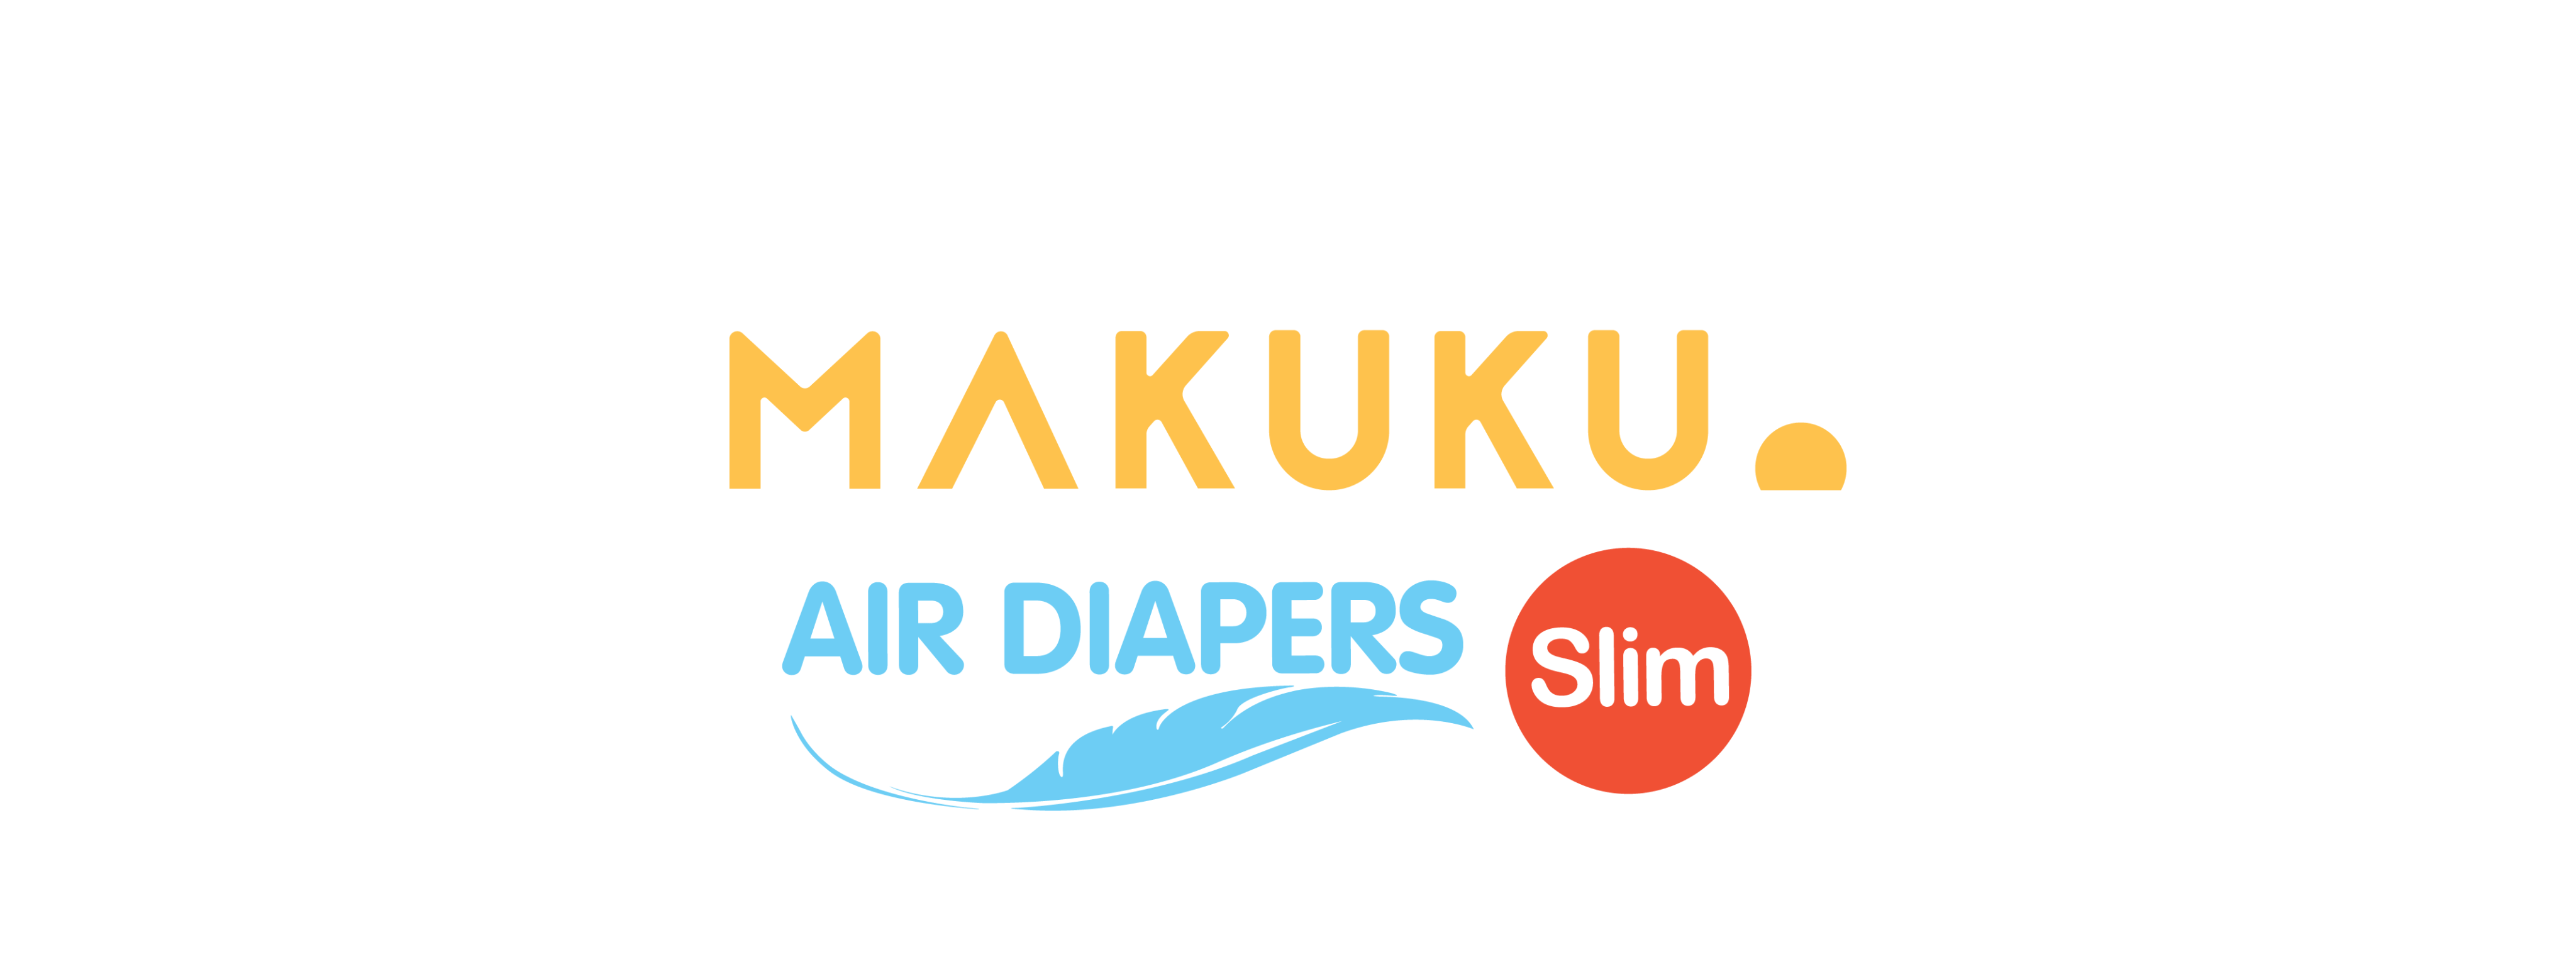 Logo Makuku Air Diapers Slim